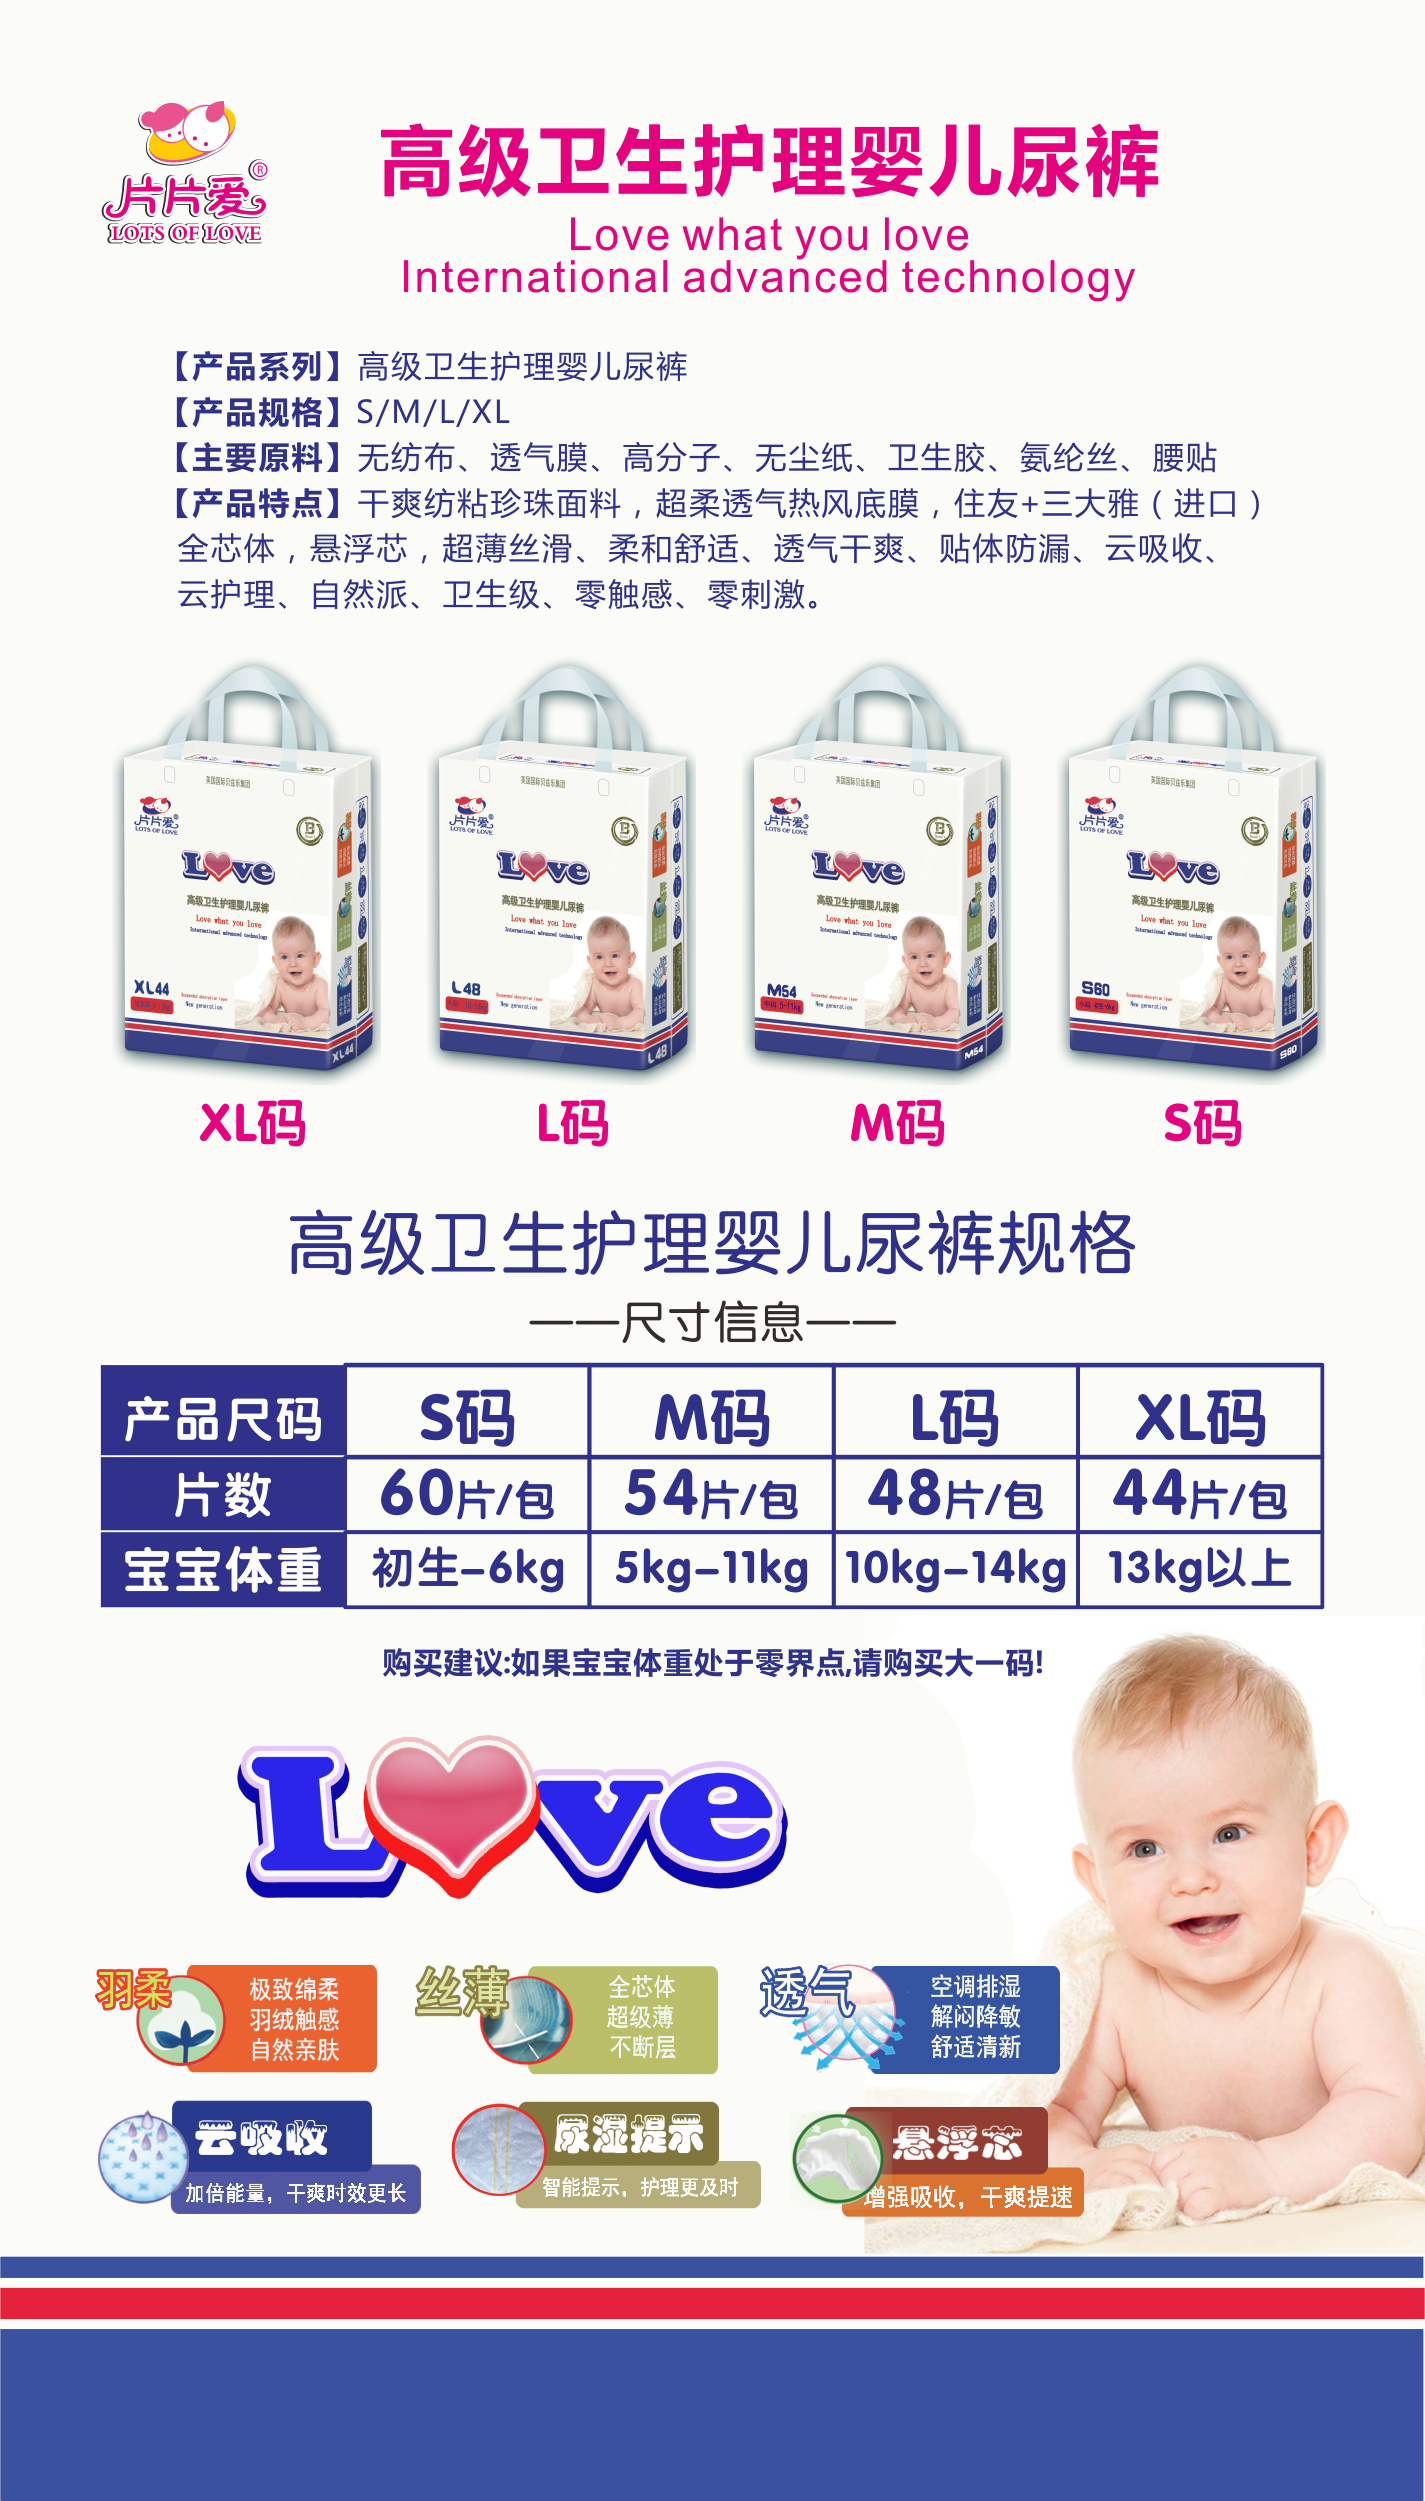 \"片片爱高级卫生护理婴儿纸尿裤L48,产品编号83500\"